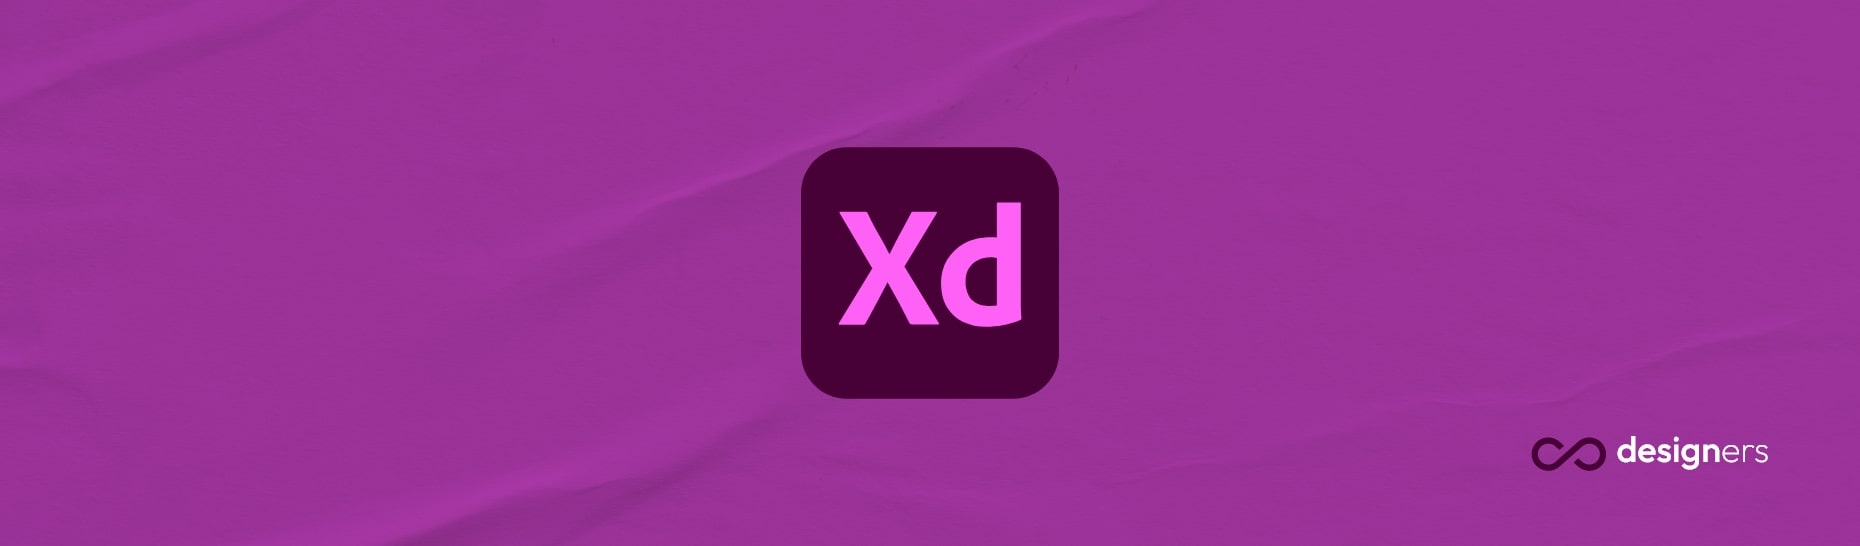 Will Adobe XD dominate InVision Studio and Sketch  Design Tools